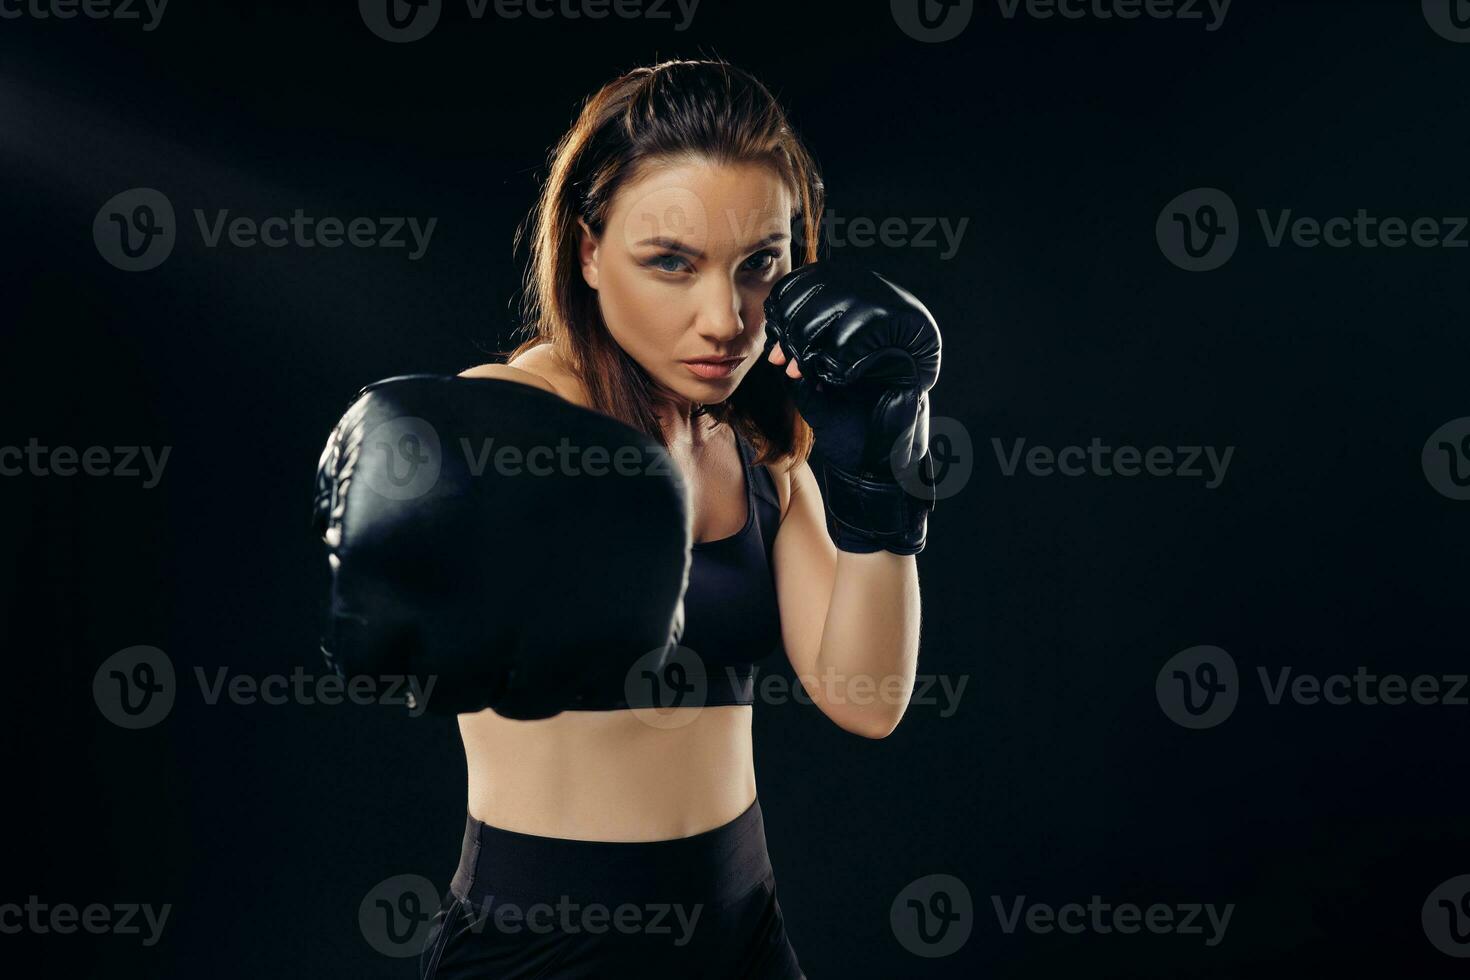 atletico donna nel boxe guanti è praticante karatè nel studio. foto